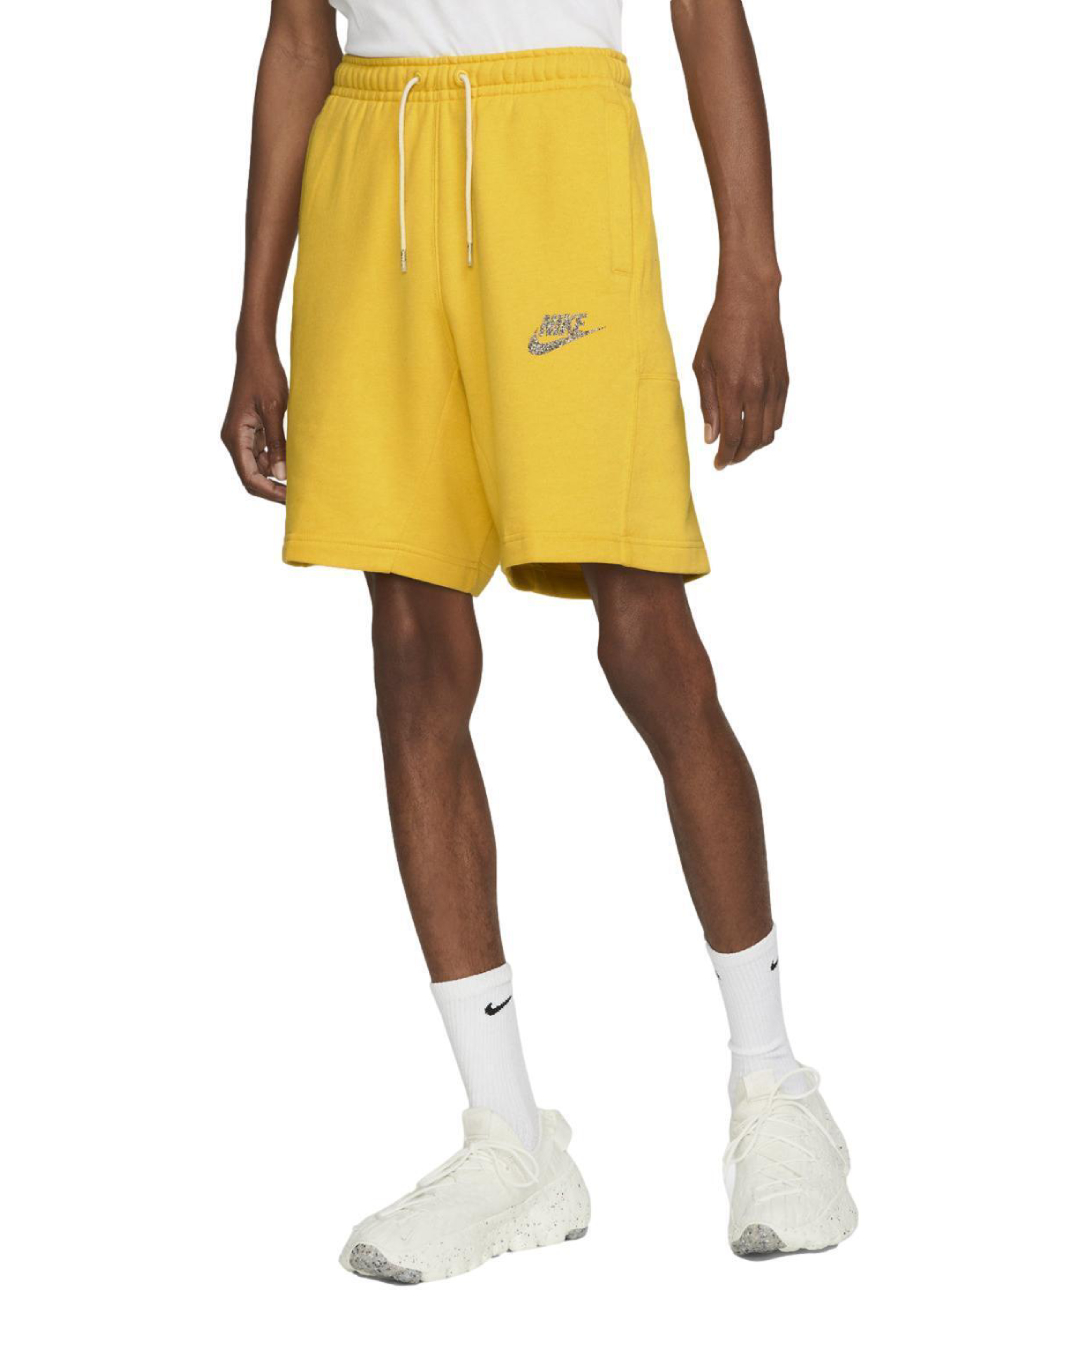 Спортивные шорты мужские Nike Nsw Revival Flc Short C DM5635-709 желтые XL